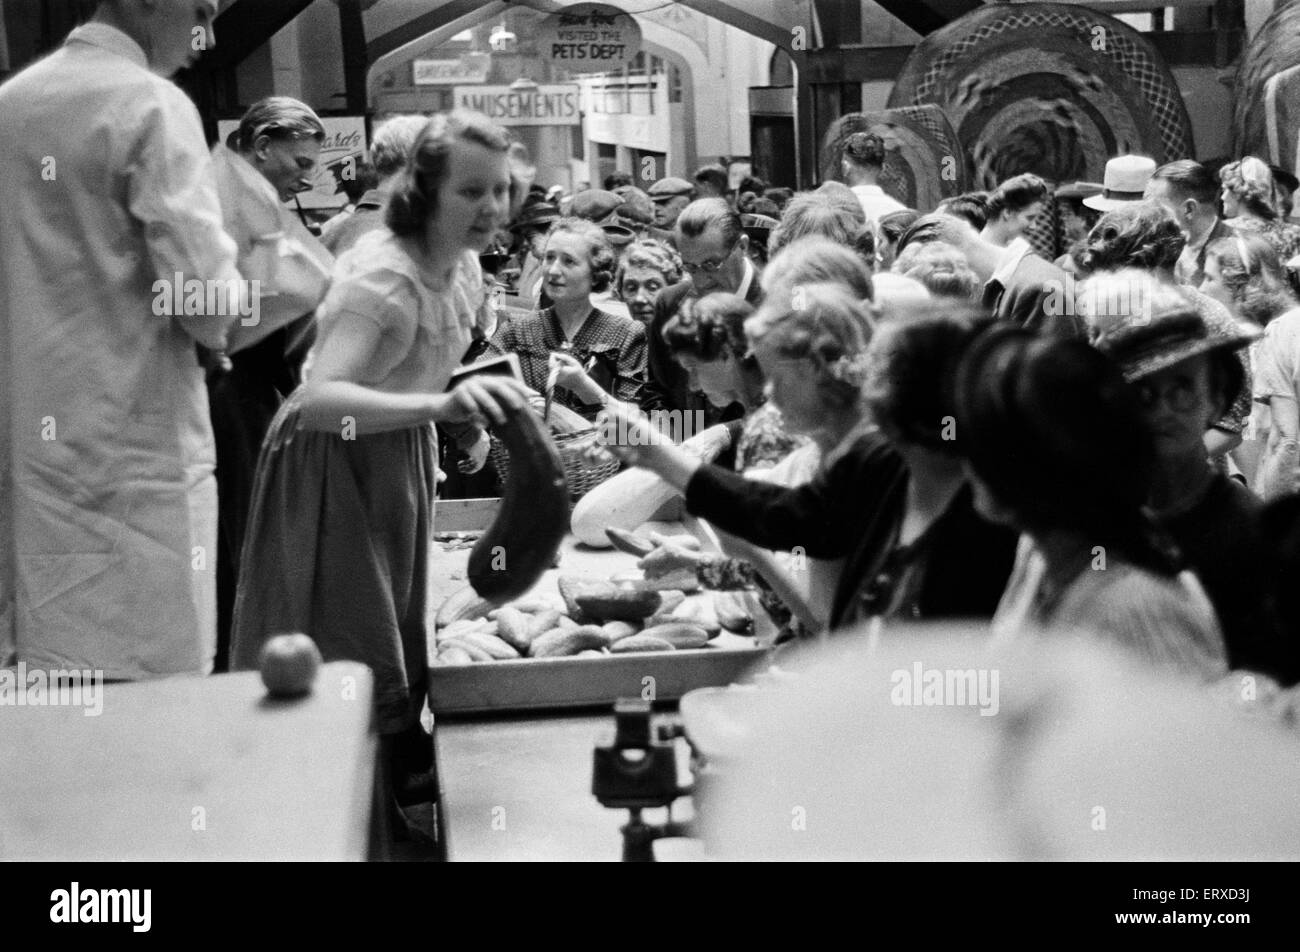 Clients à un prix juste aux producteurs "Marché aux Légumes". East Grinstead, Sussex de l'Ouest, août 1947.Les clients à un "juste prix aux producteurs de légumes du marché'. East Grinstead, Sussex de l'Ouest, août 1947. Banque D'Images